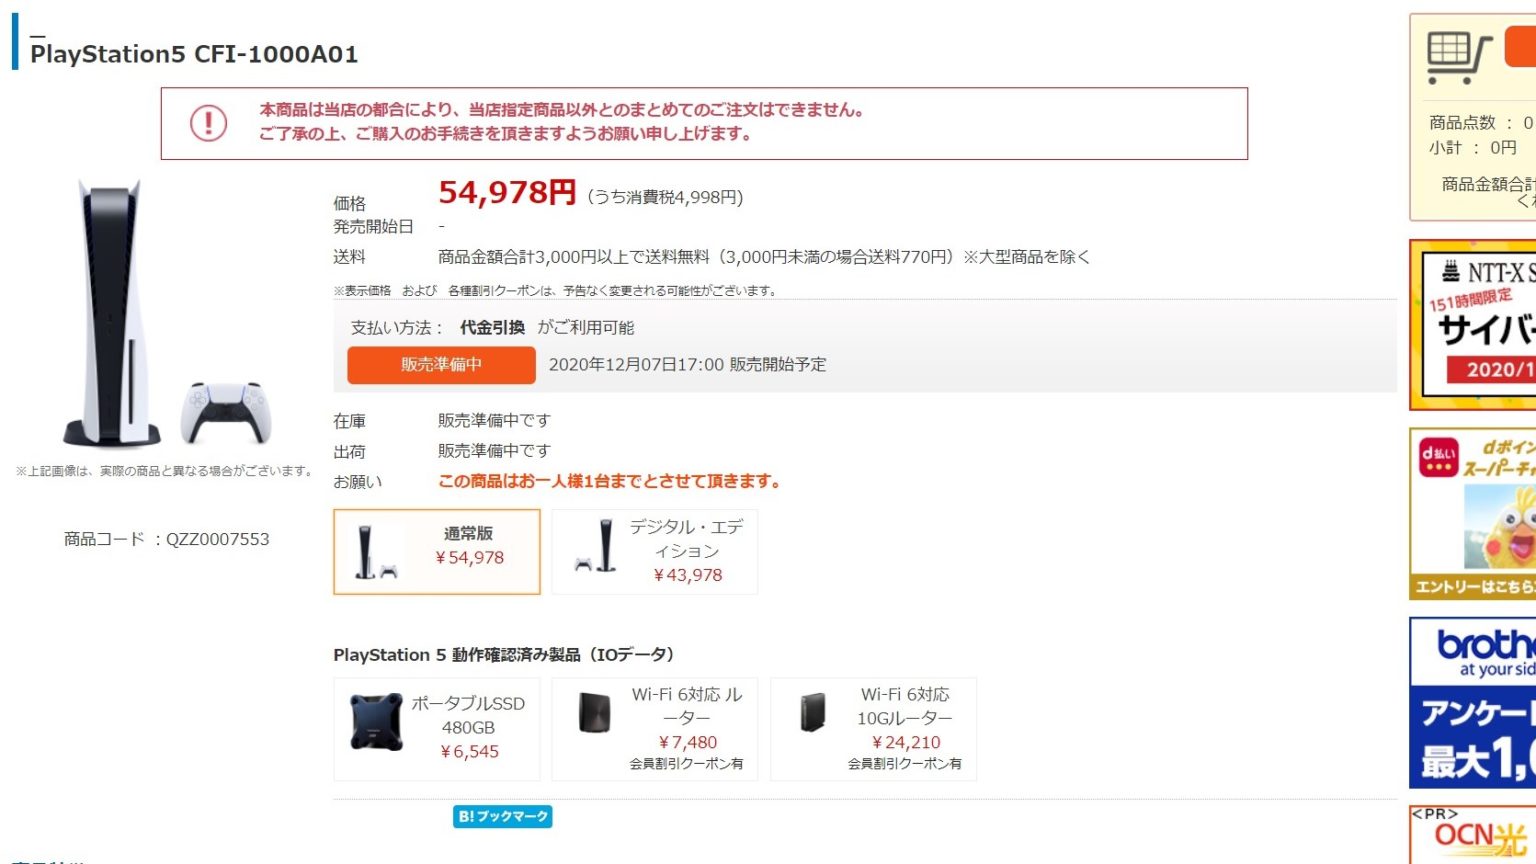 「NTT-X Store」が12月7日17時からPlayStation 5通常版の通常販売を実施へ。ひとりにつき1台限定